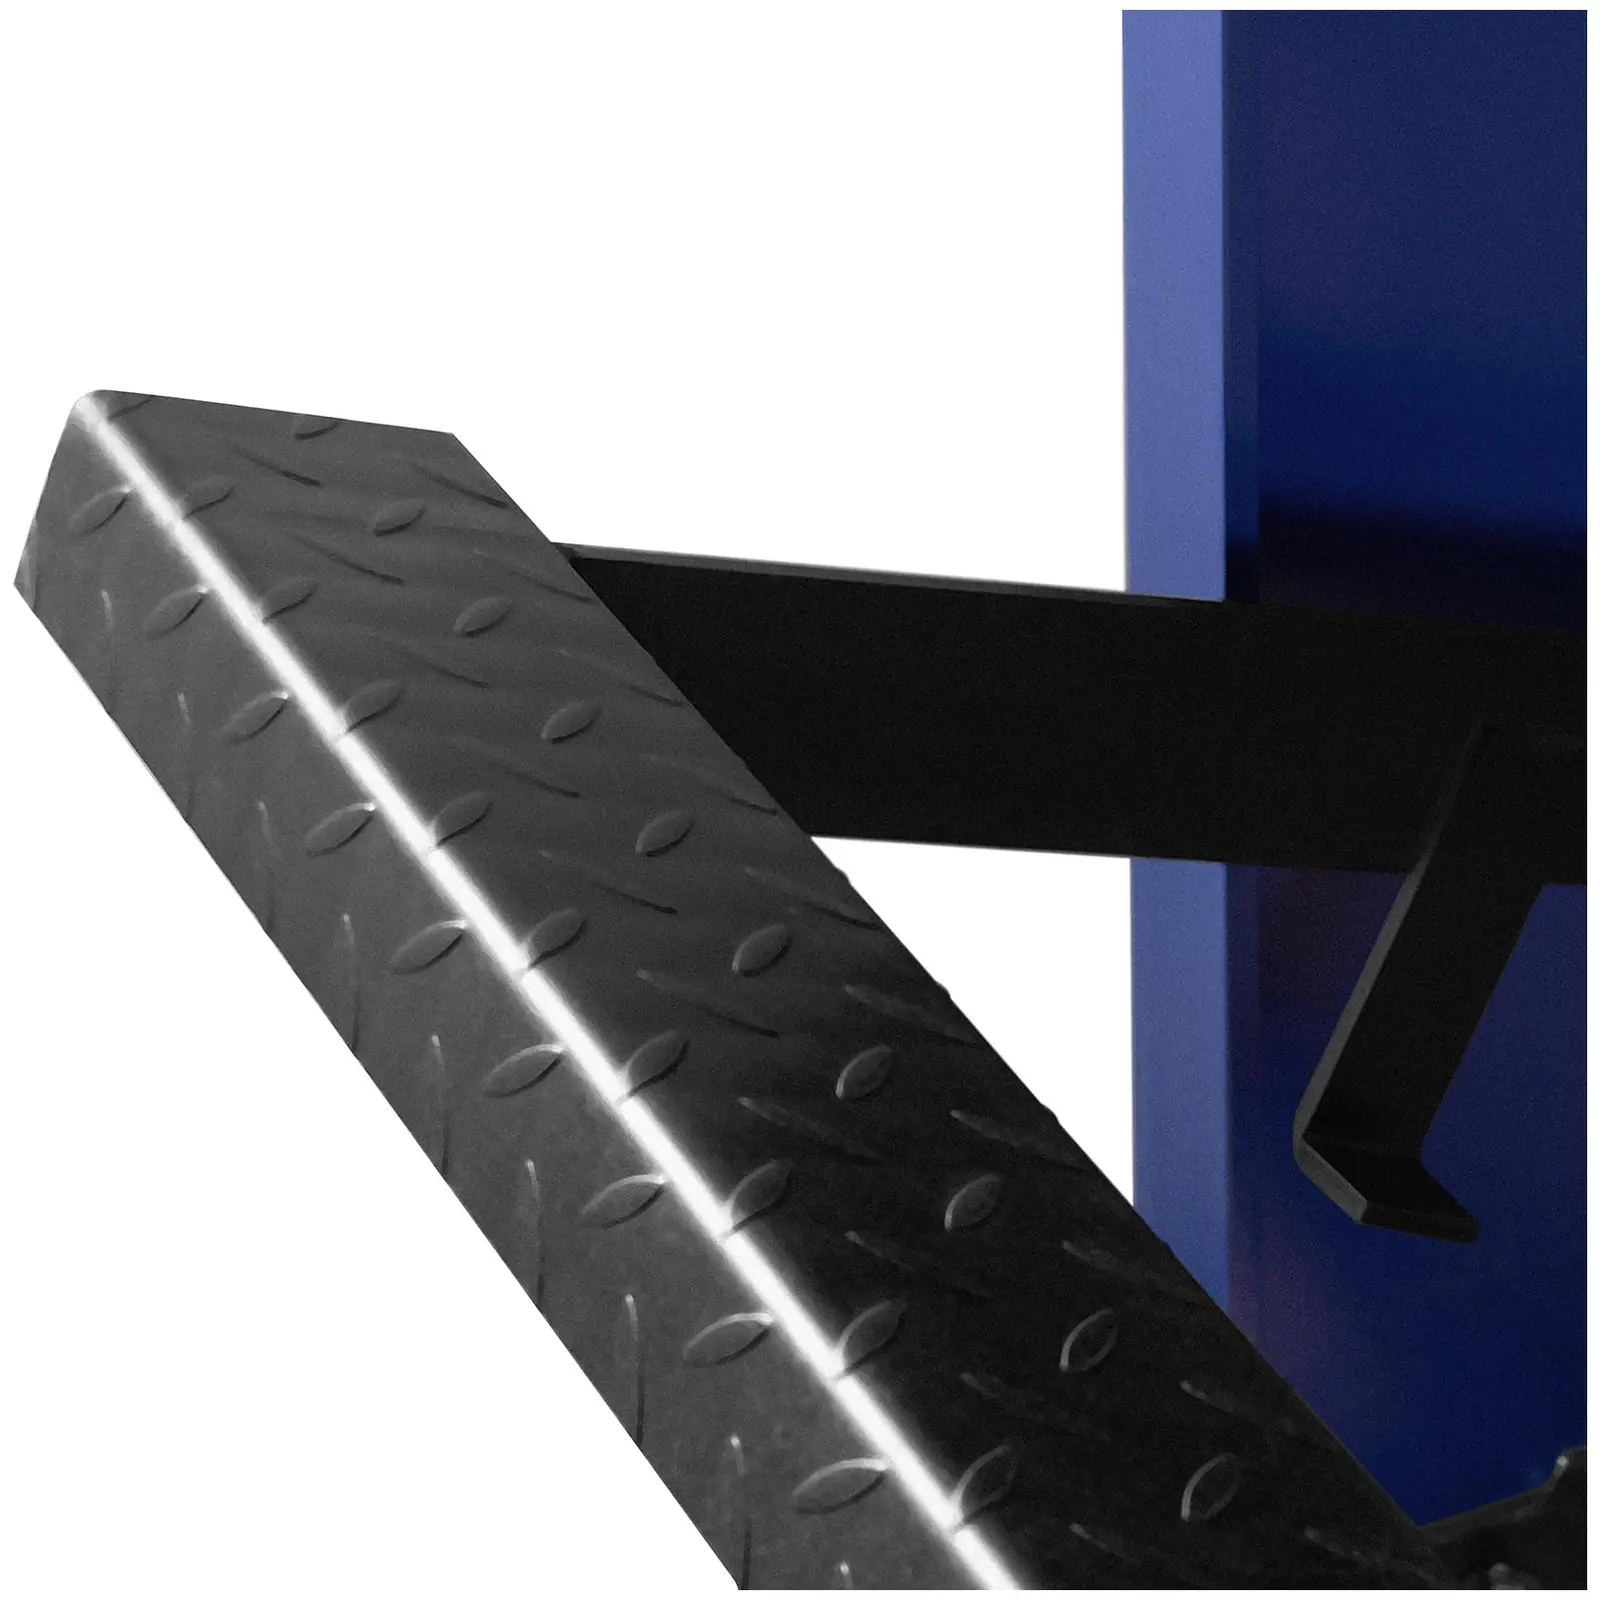 Tafelschere - mit Unterbau - Fußpedal - 1500 mm Schnittlänge - bis 1,2 mm Materialstärke - 0 - 840 m Hinteranschlag